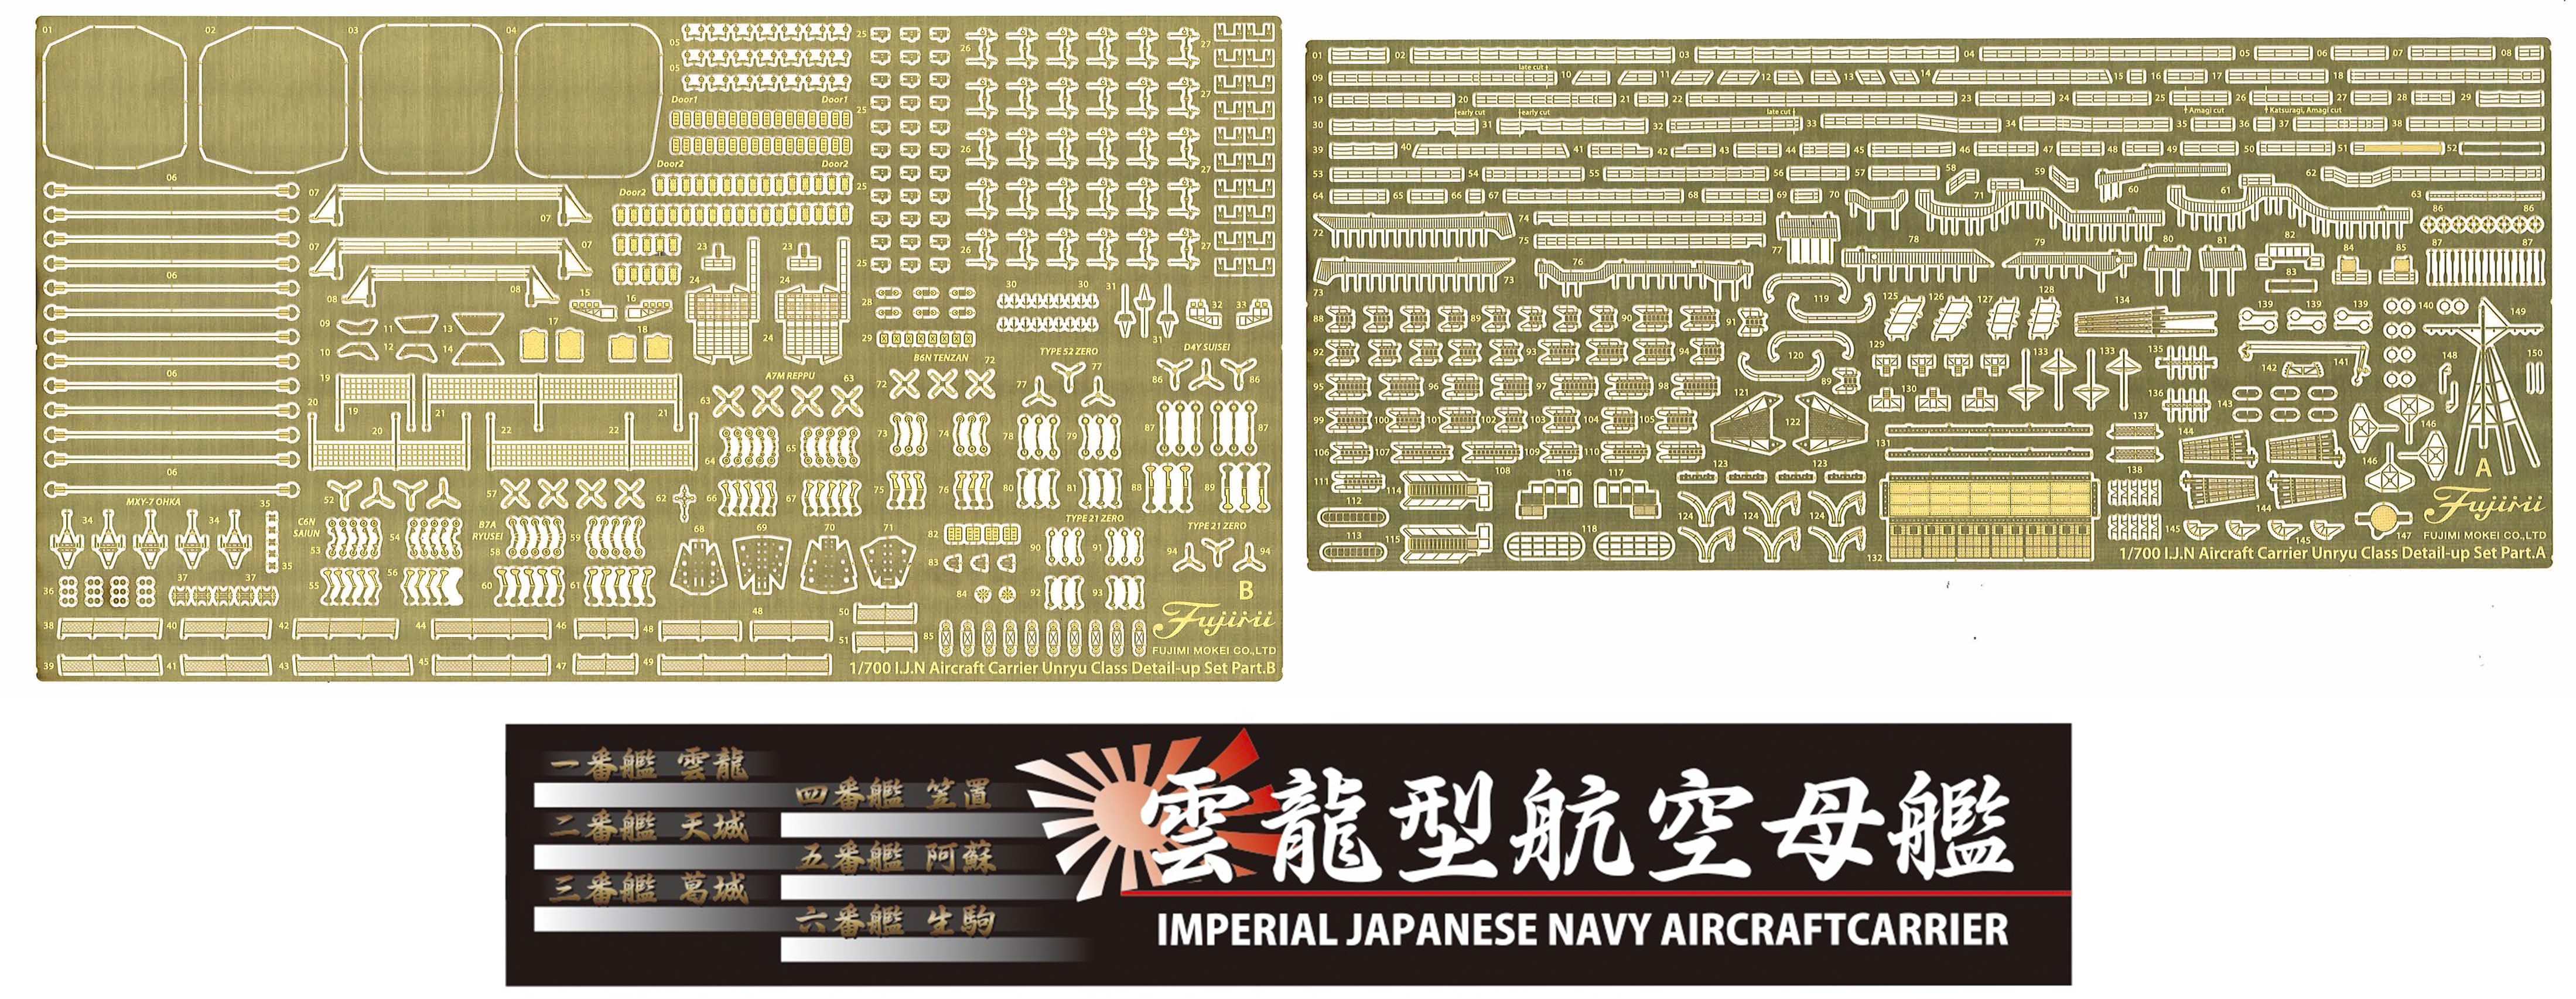 1/700 日本海軍航空母艦 雲龍型用 エッチングパーツ(w/艦名プレート)